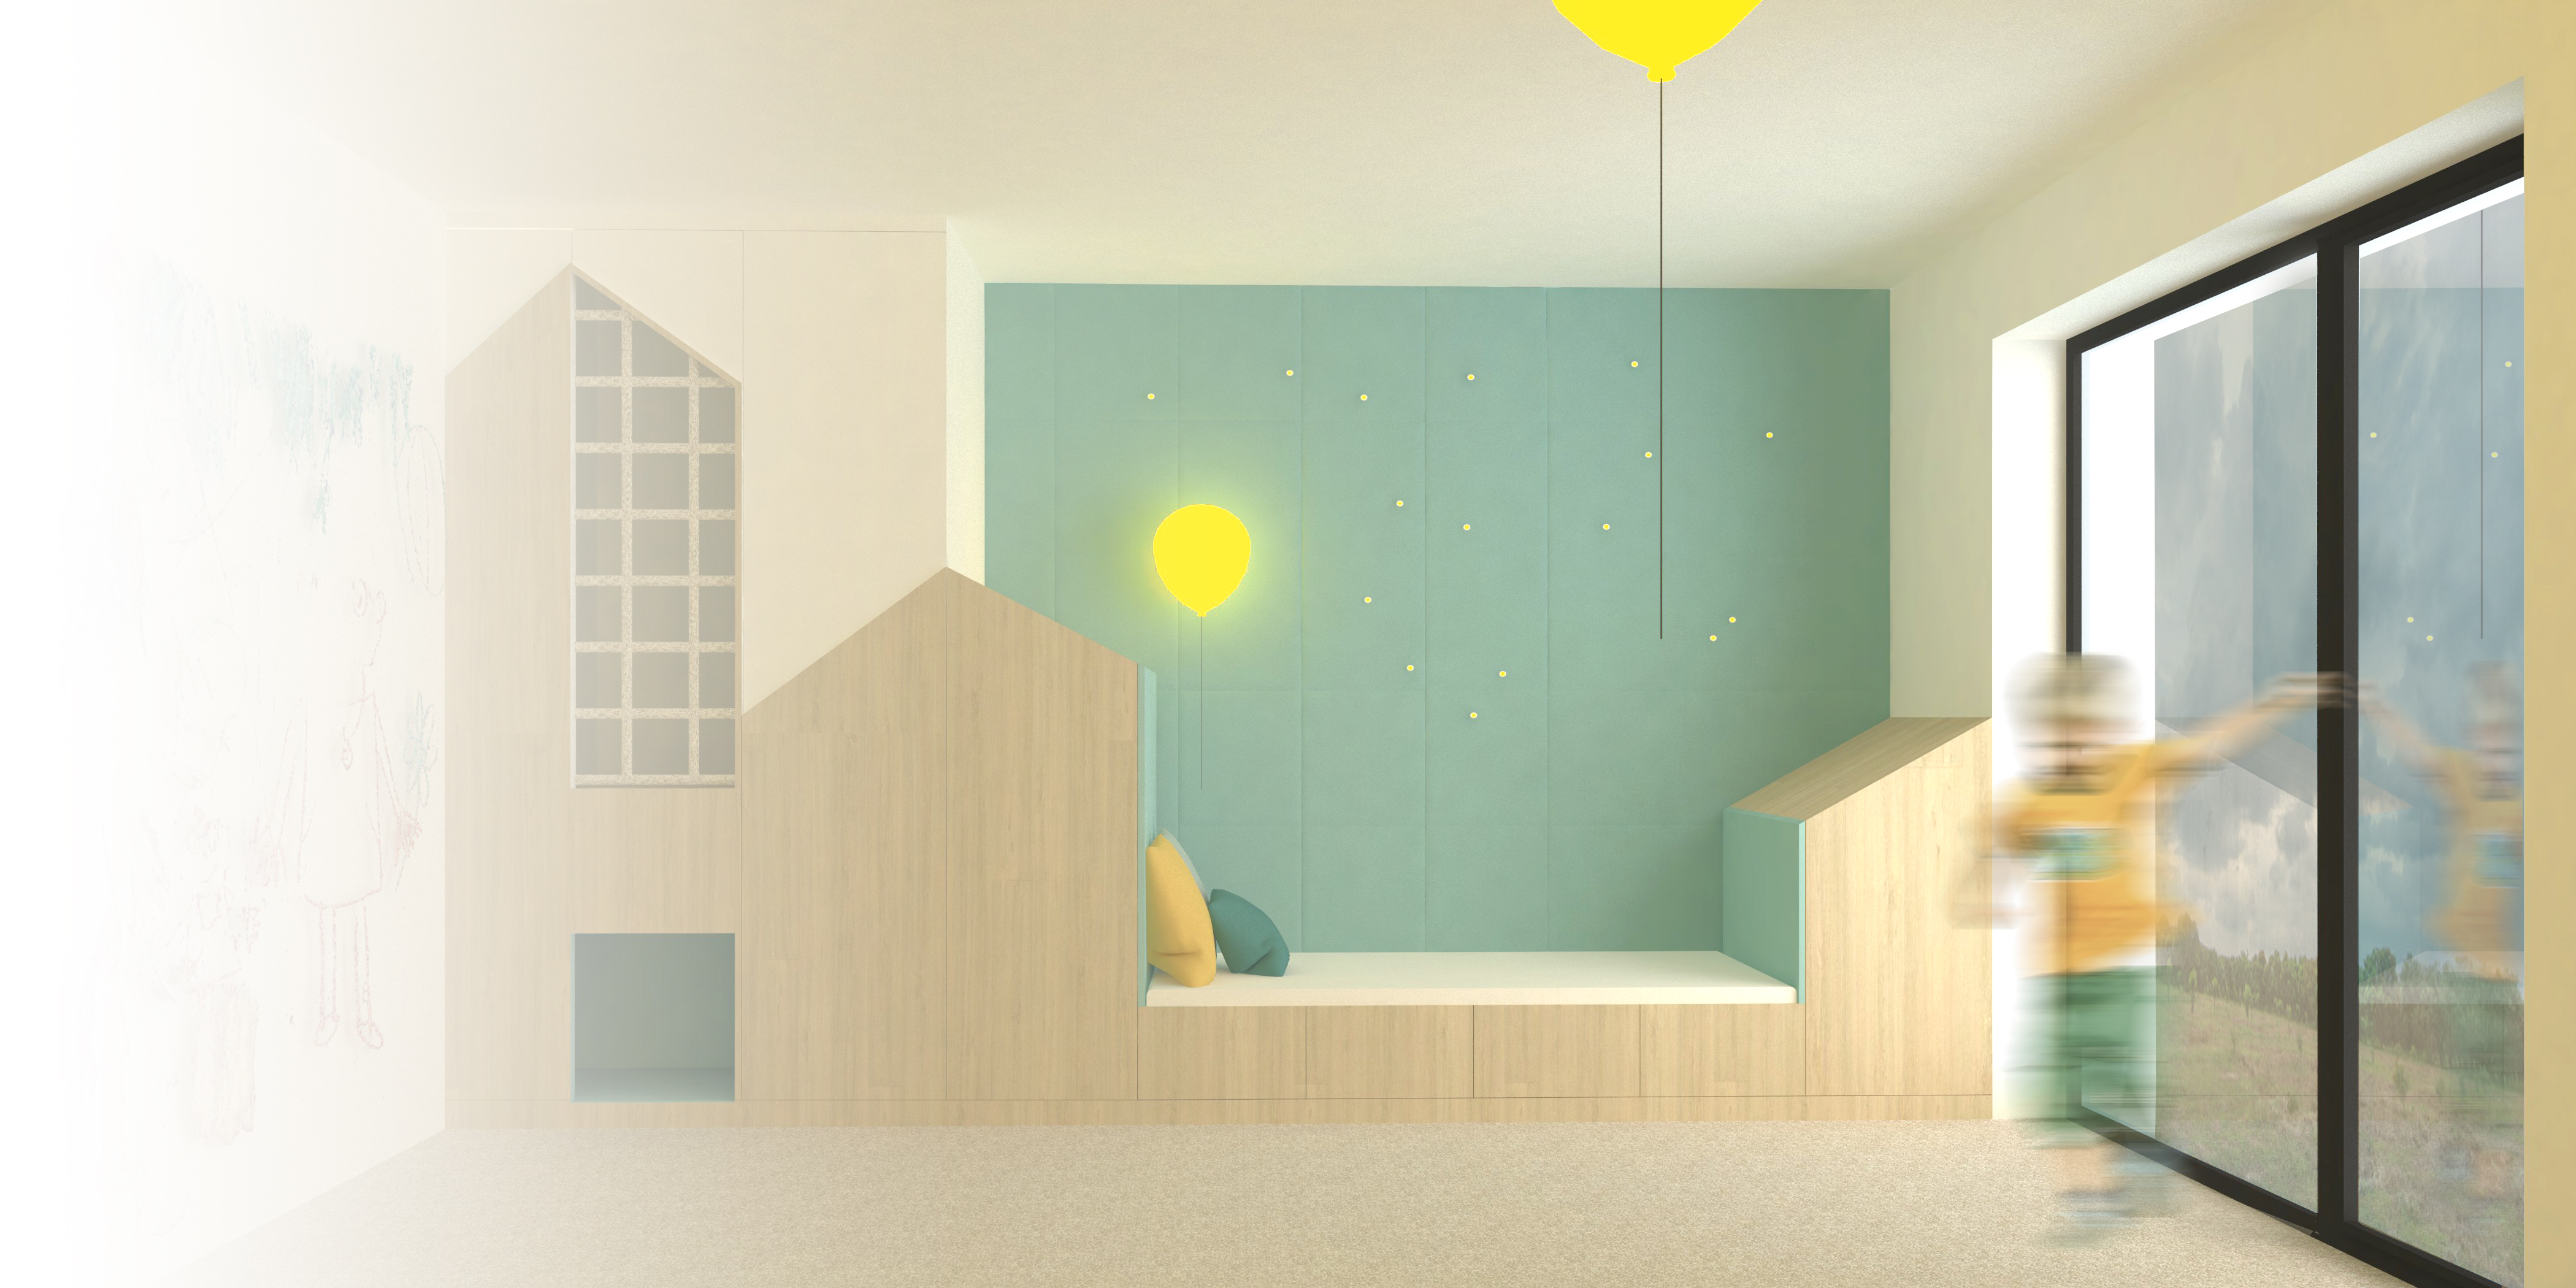 Nábytková sestava na míru do dětského pokoje s integrovanou postelí a úložným prostorem v kombinaci bílé, mintové a světlého dřeva.